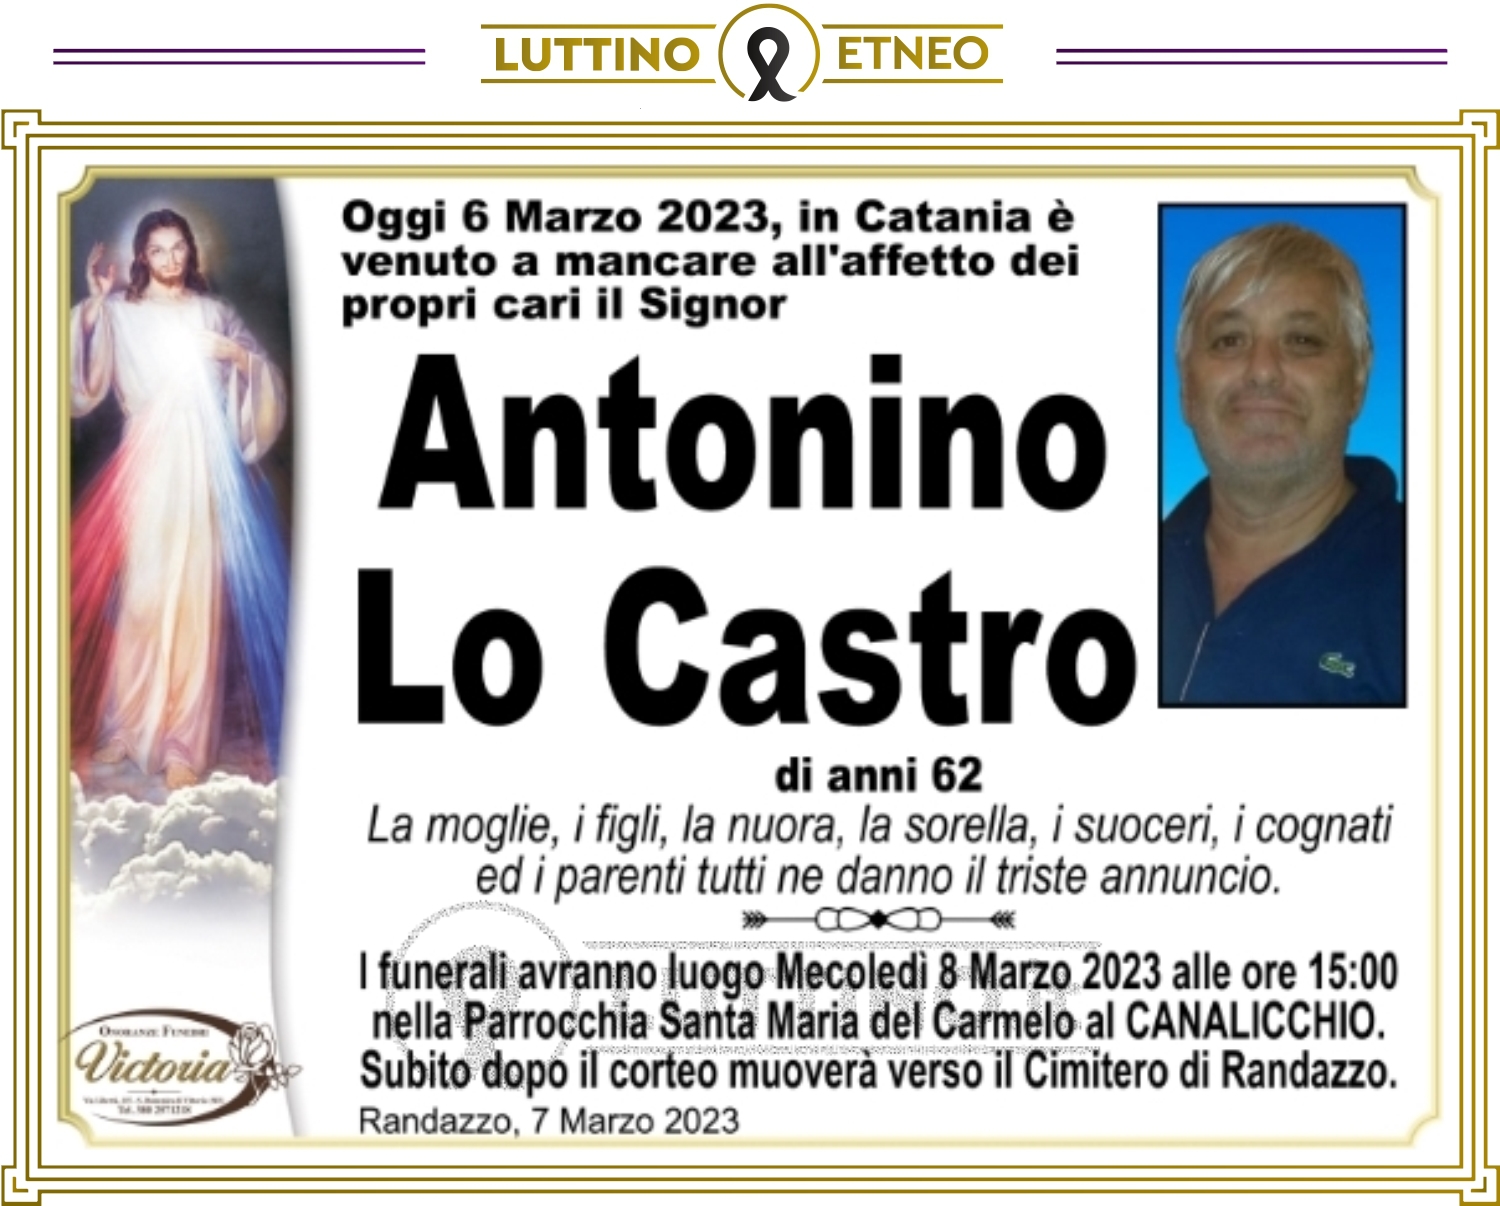 Antonino Lo Castro